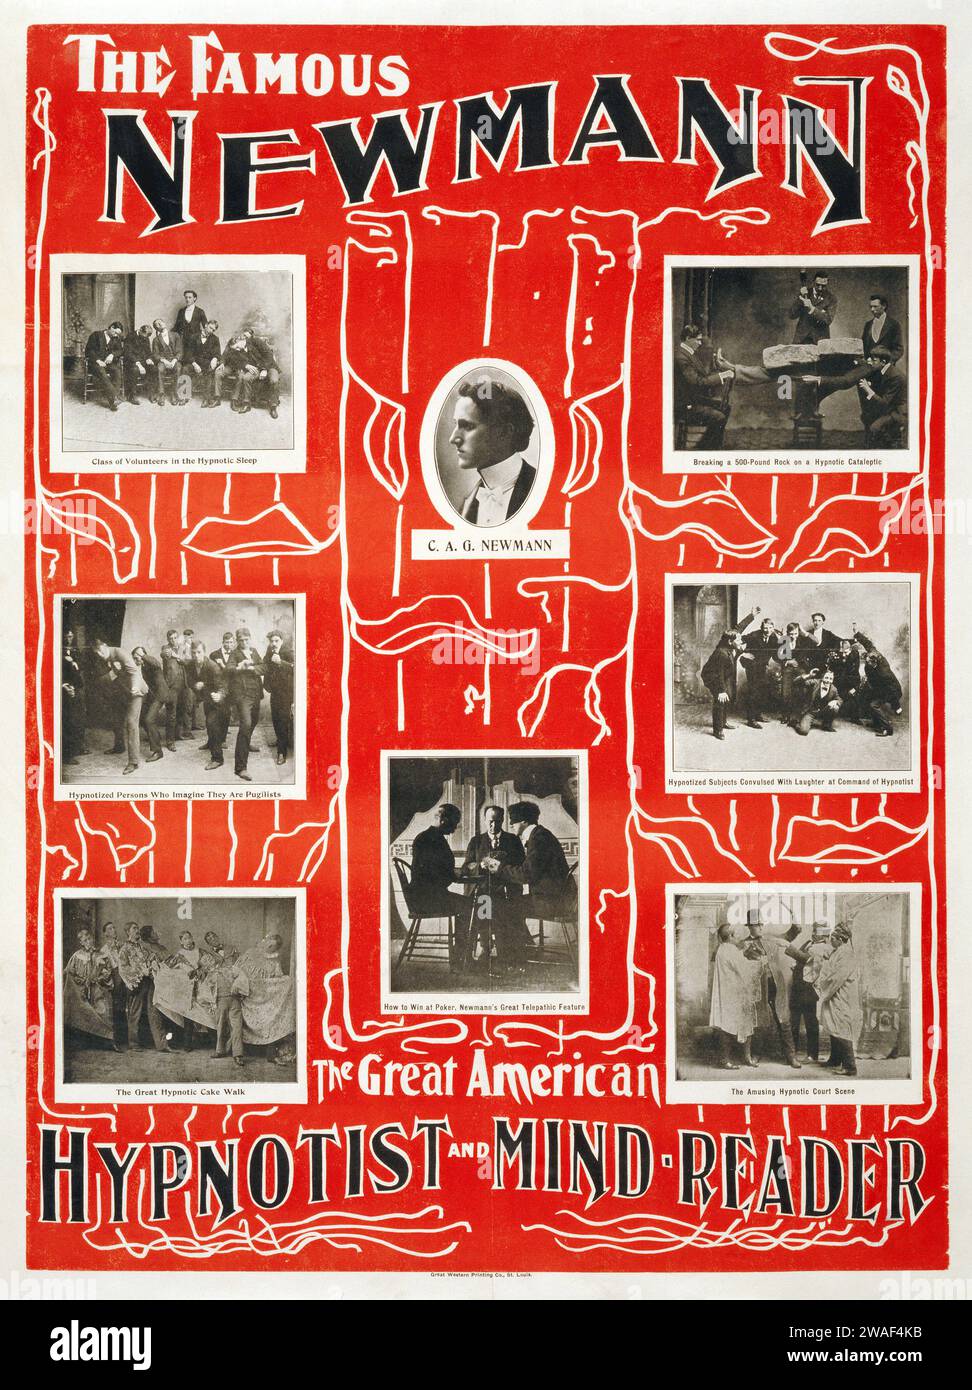 Le célèbre Newmann le grand hypnotiseur américain et lecteur d'esprit - affiche de spectacle de magie vintage - c 1928 Banque D'Images